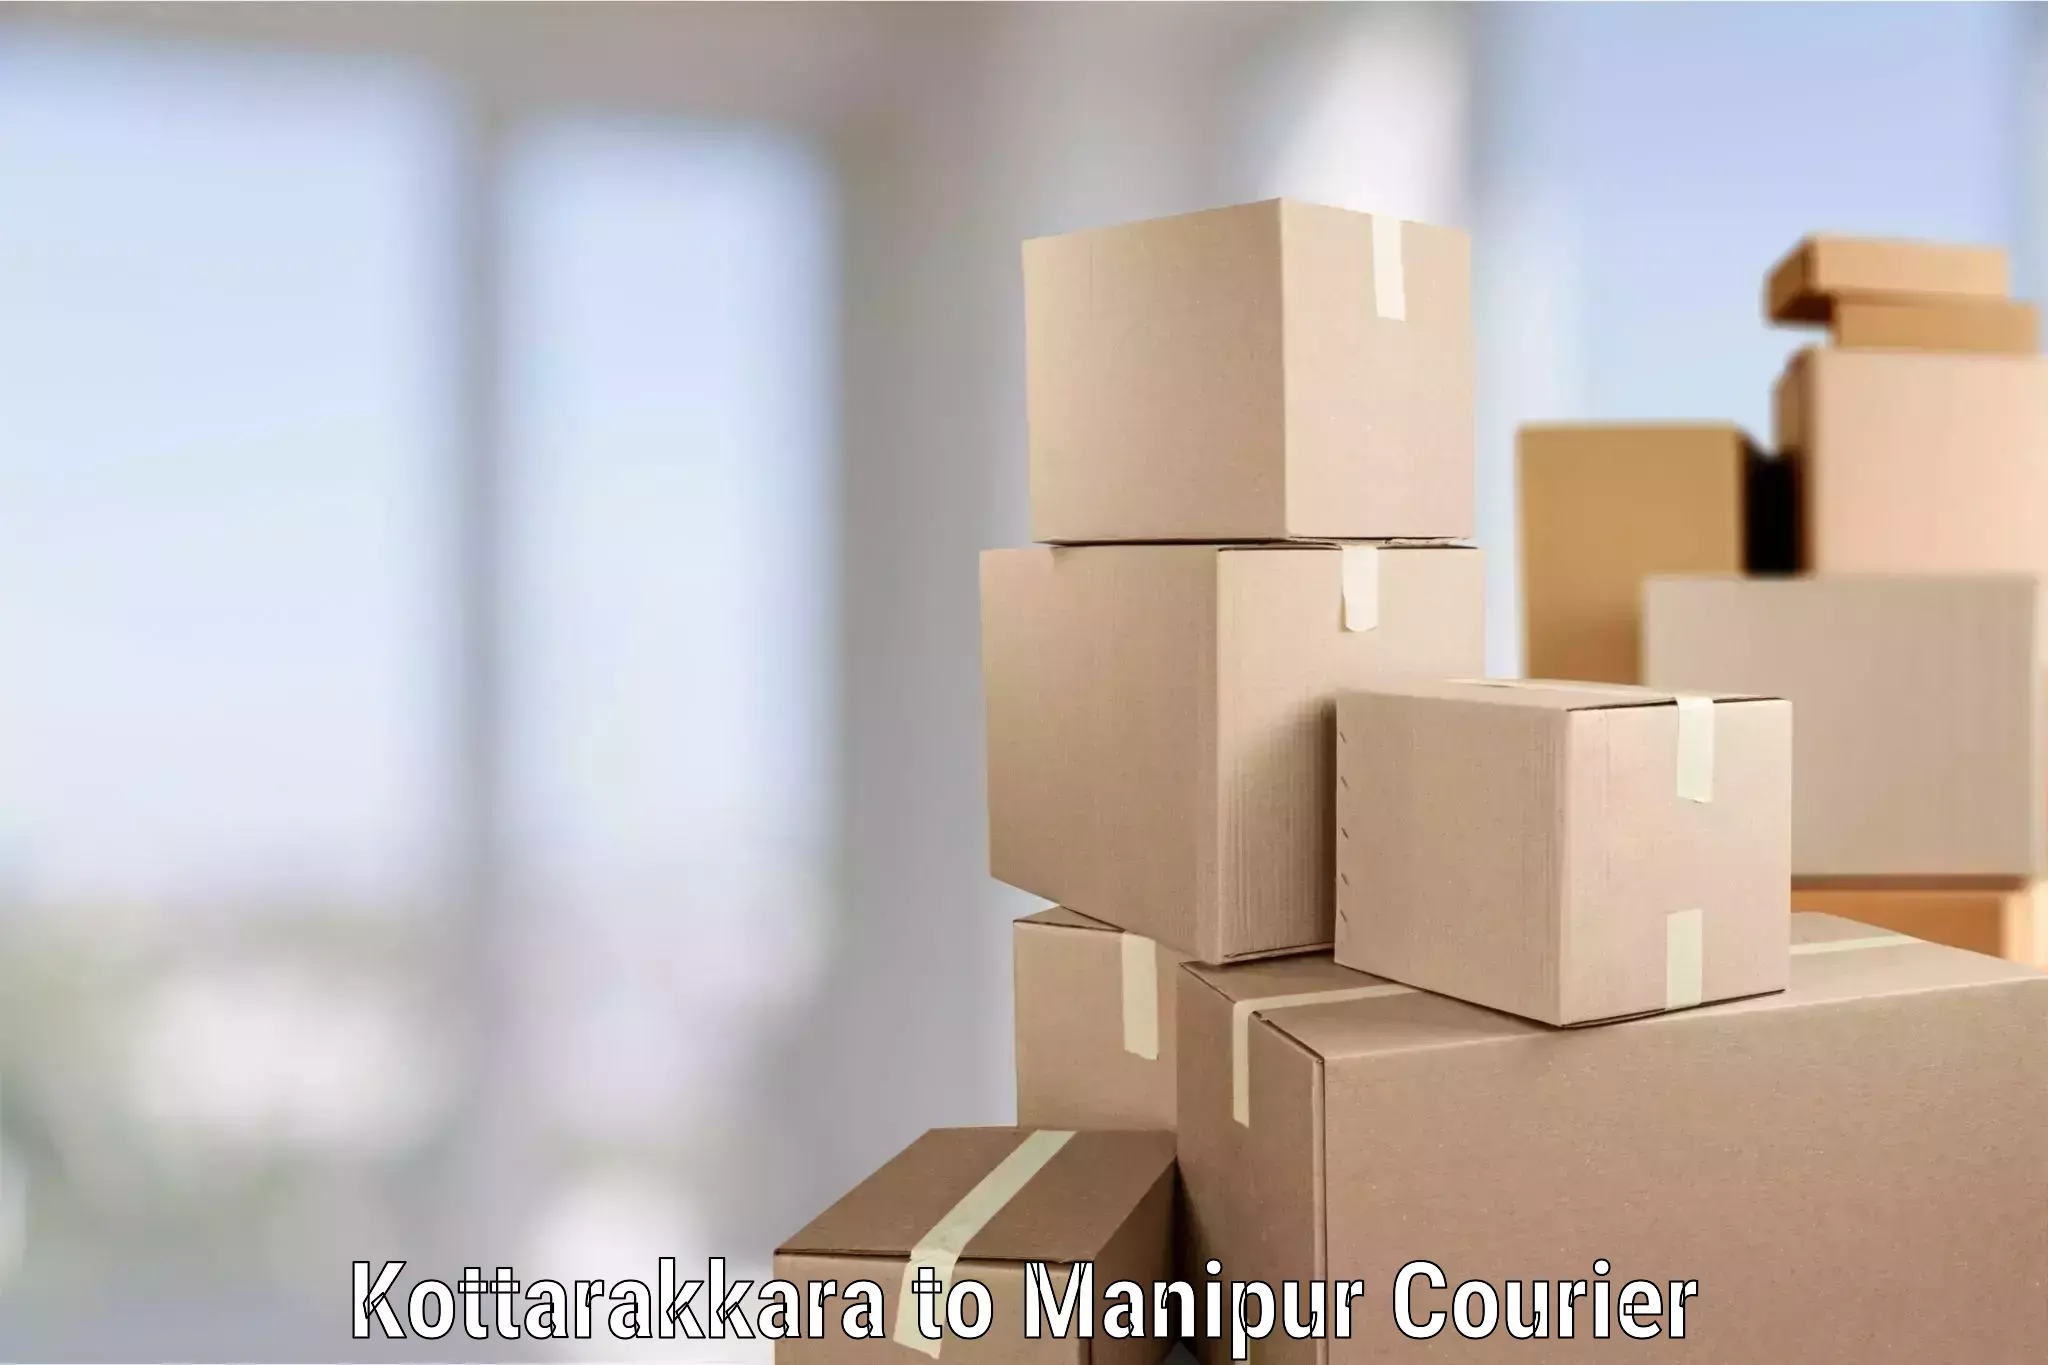 Professional movers and packers in Kottarakkara to Churachandpur